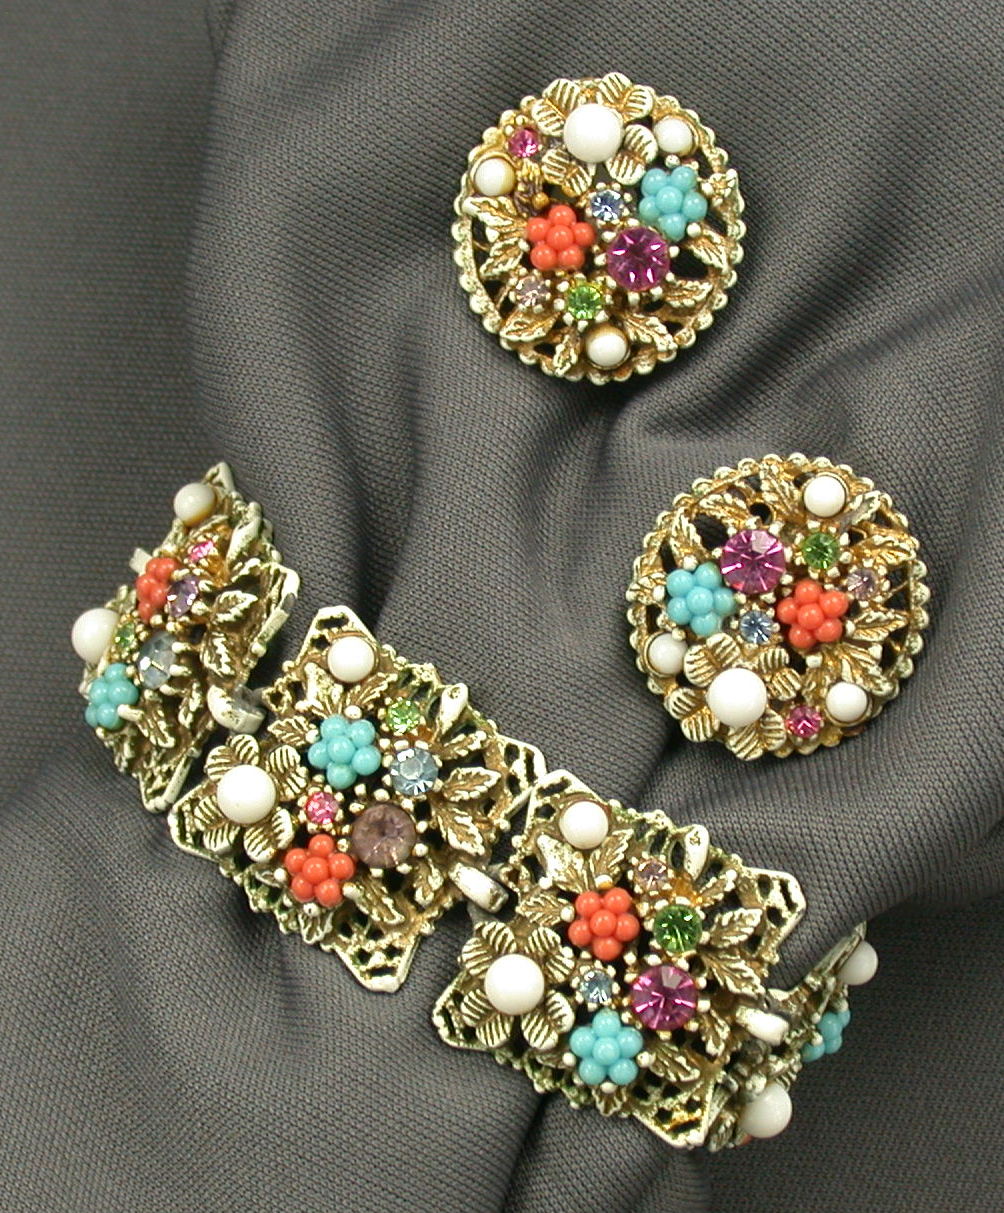 Art Bracelet & Earrings